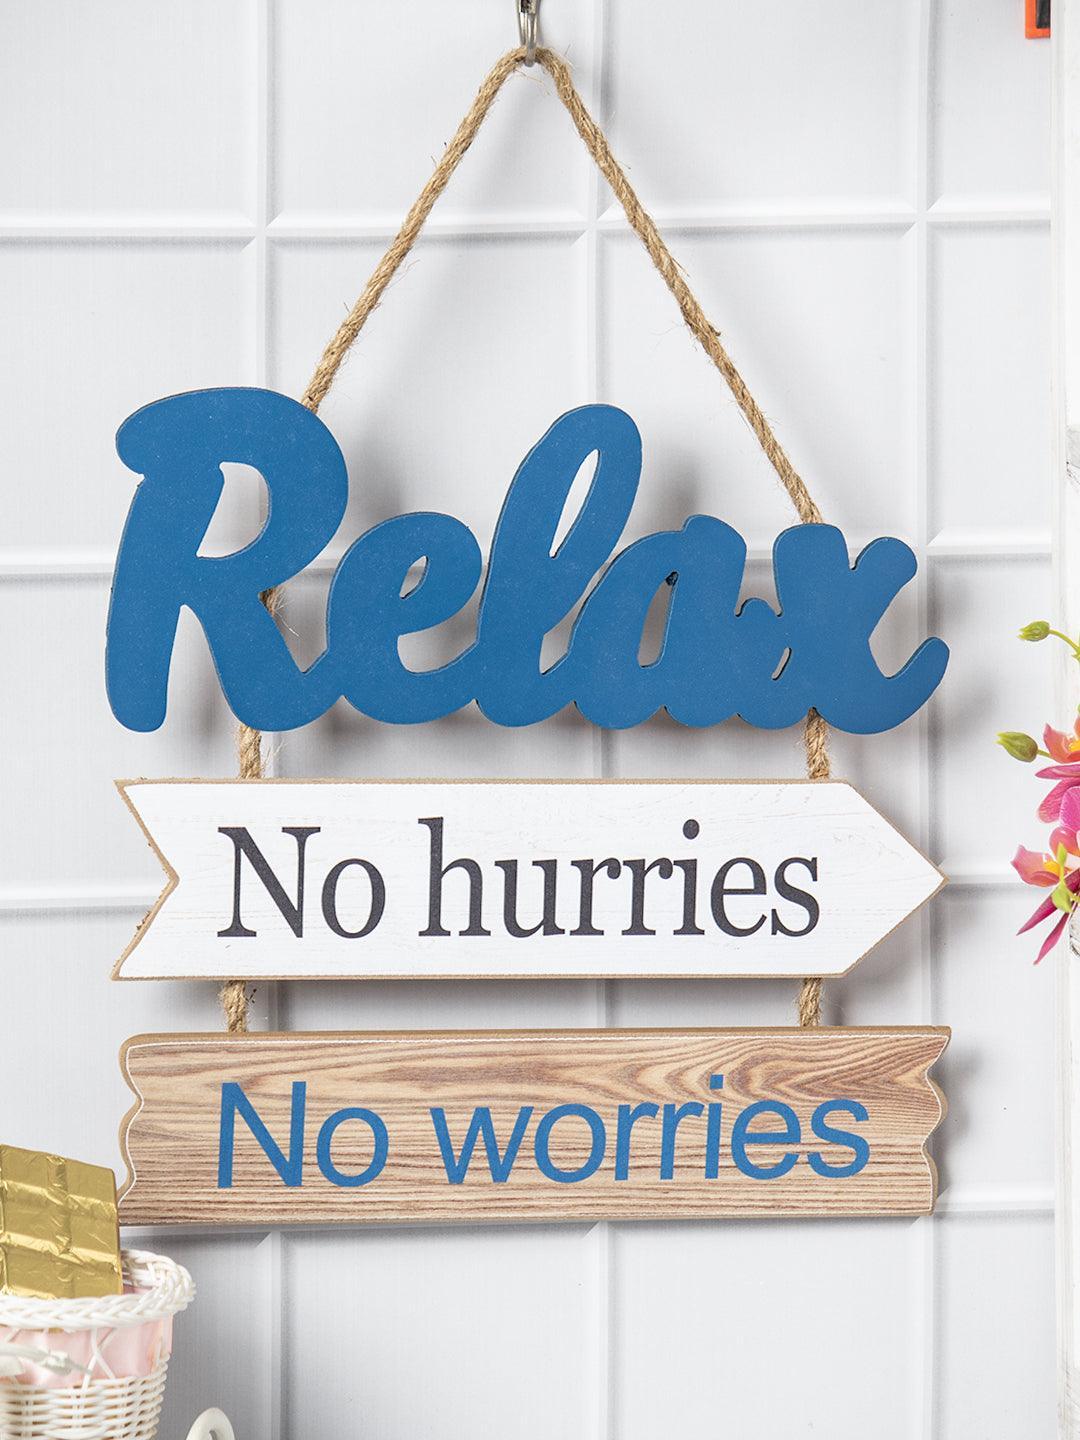 "Relex No hurries No worries" Wall Hanging Plaque - MARKET 99